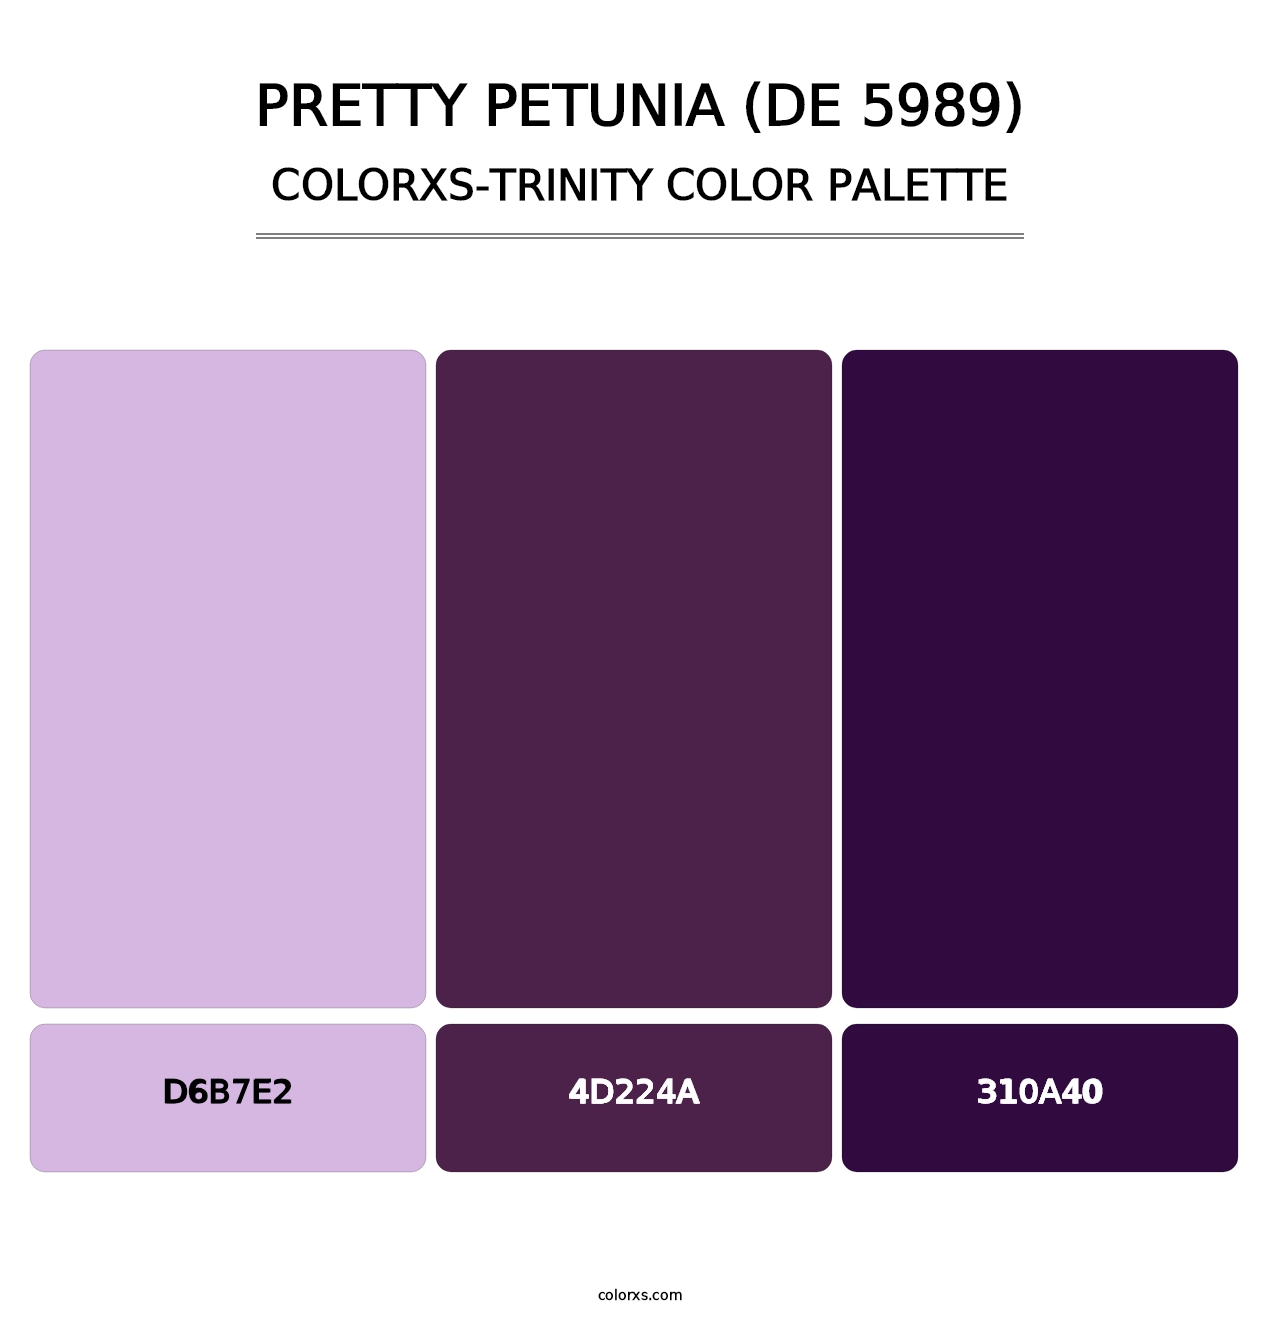 Pretty Petunia (DE 5989) - Colorxs Trinity Palette